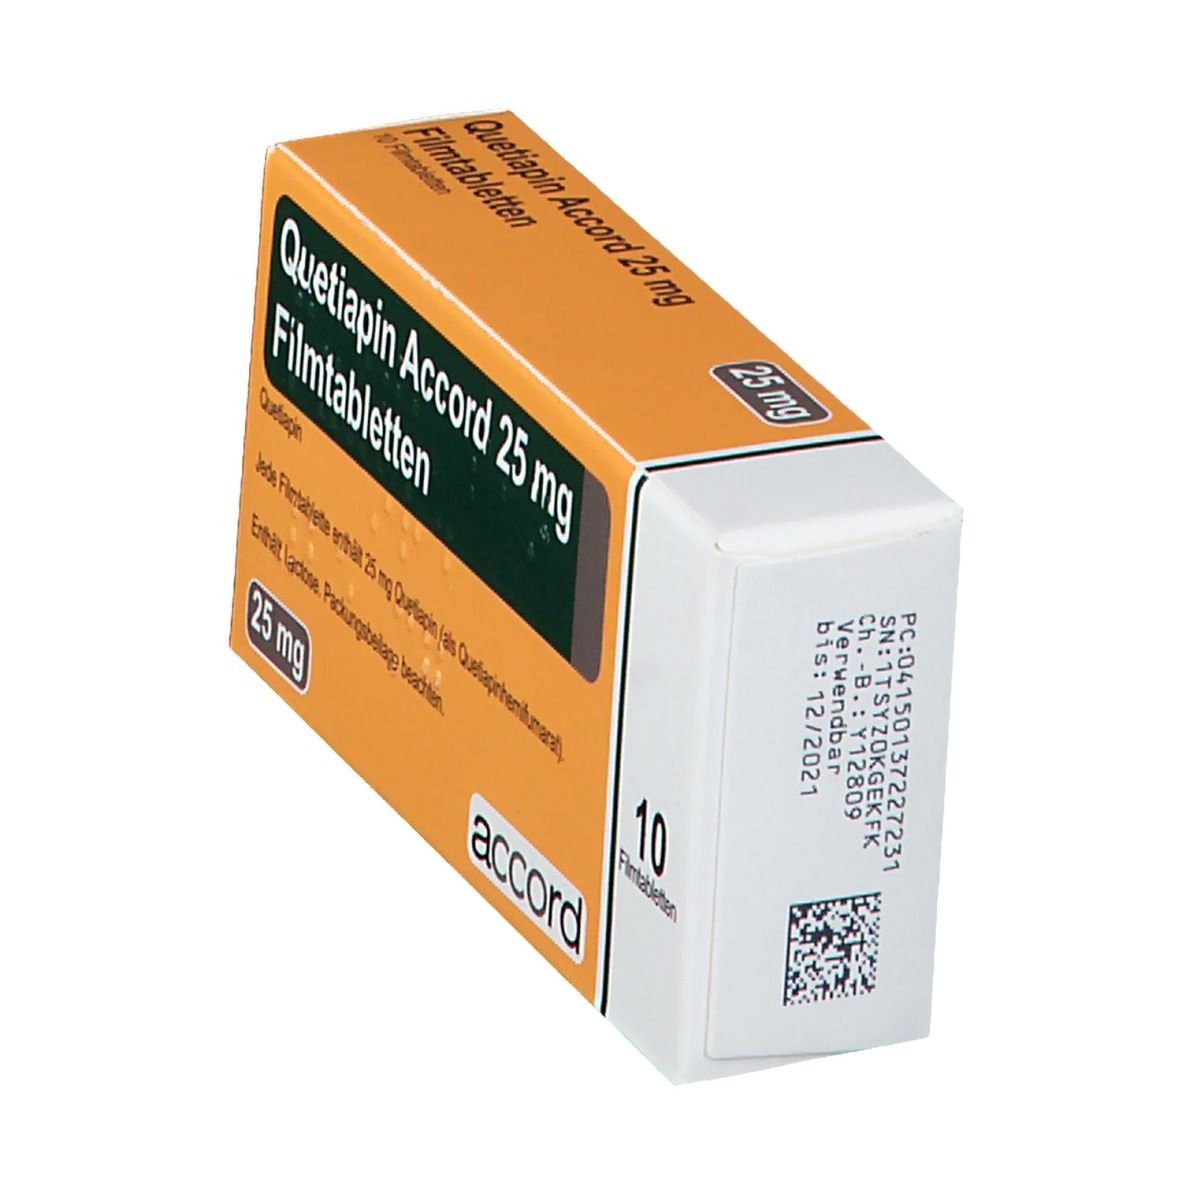 Quetiapin Accord 25 mg